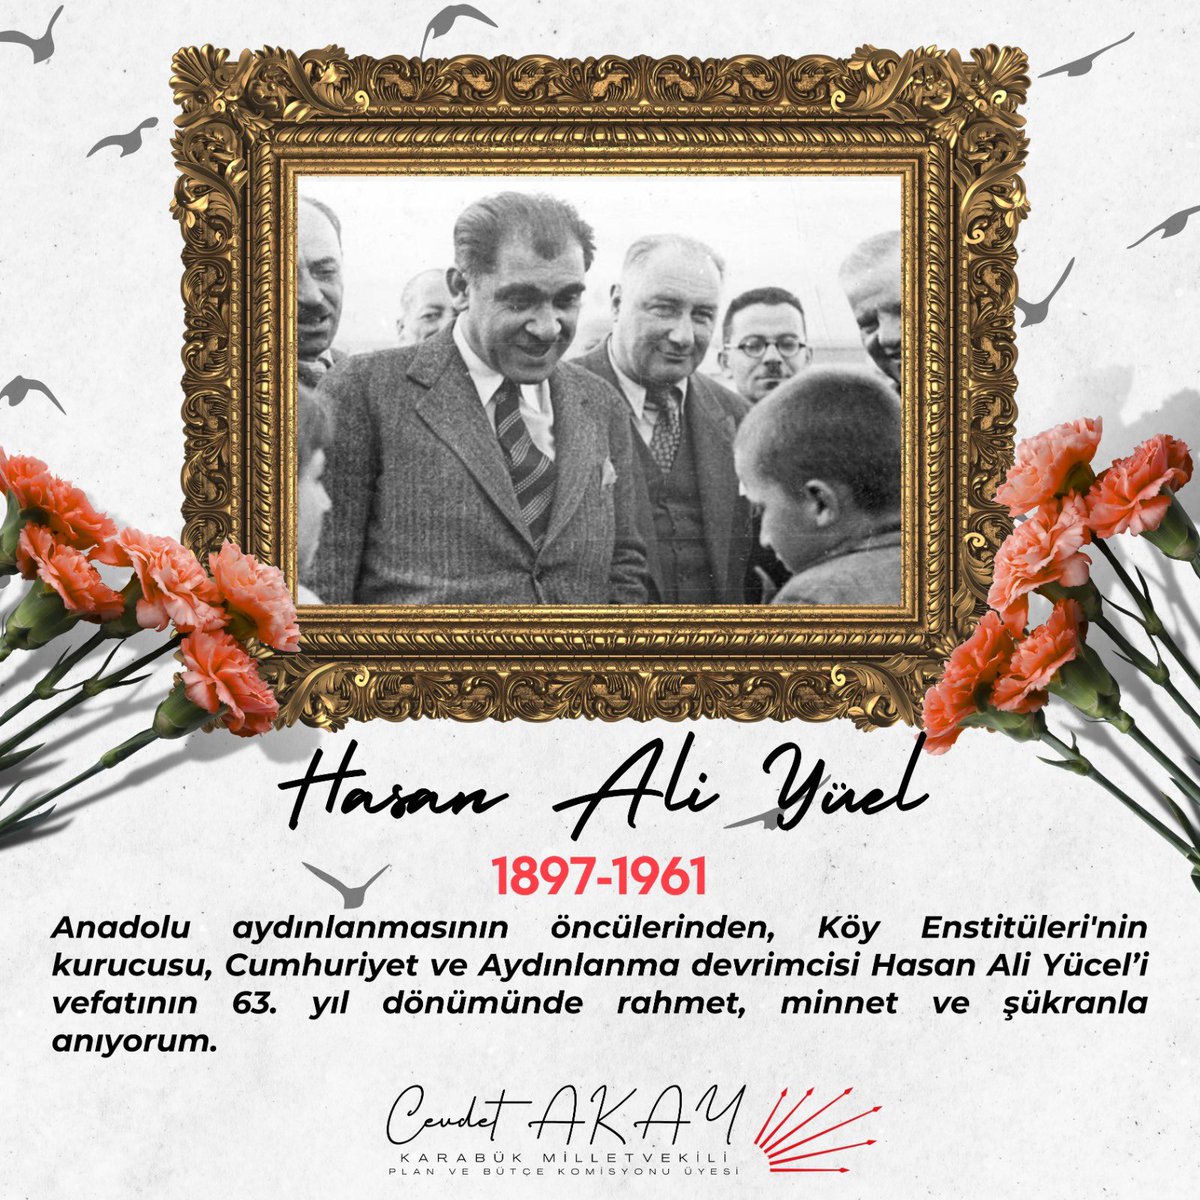 Anadolu aydınlanmasının öncülerinden, Köy Enstitüleri'nin kurucusu, Cumhuriyet ve Aydınlanma devrimcisi Hasan Ali Yücel’i vefatının 63. yıl dönümünde rahmet, minnet ve şükranla anıyorum.

#HasanAliYücel